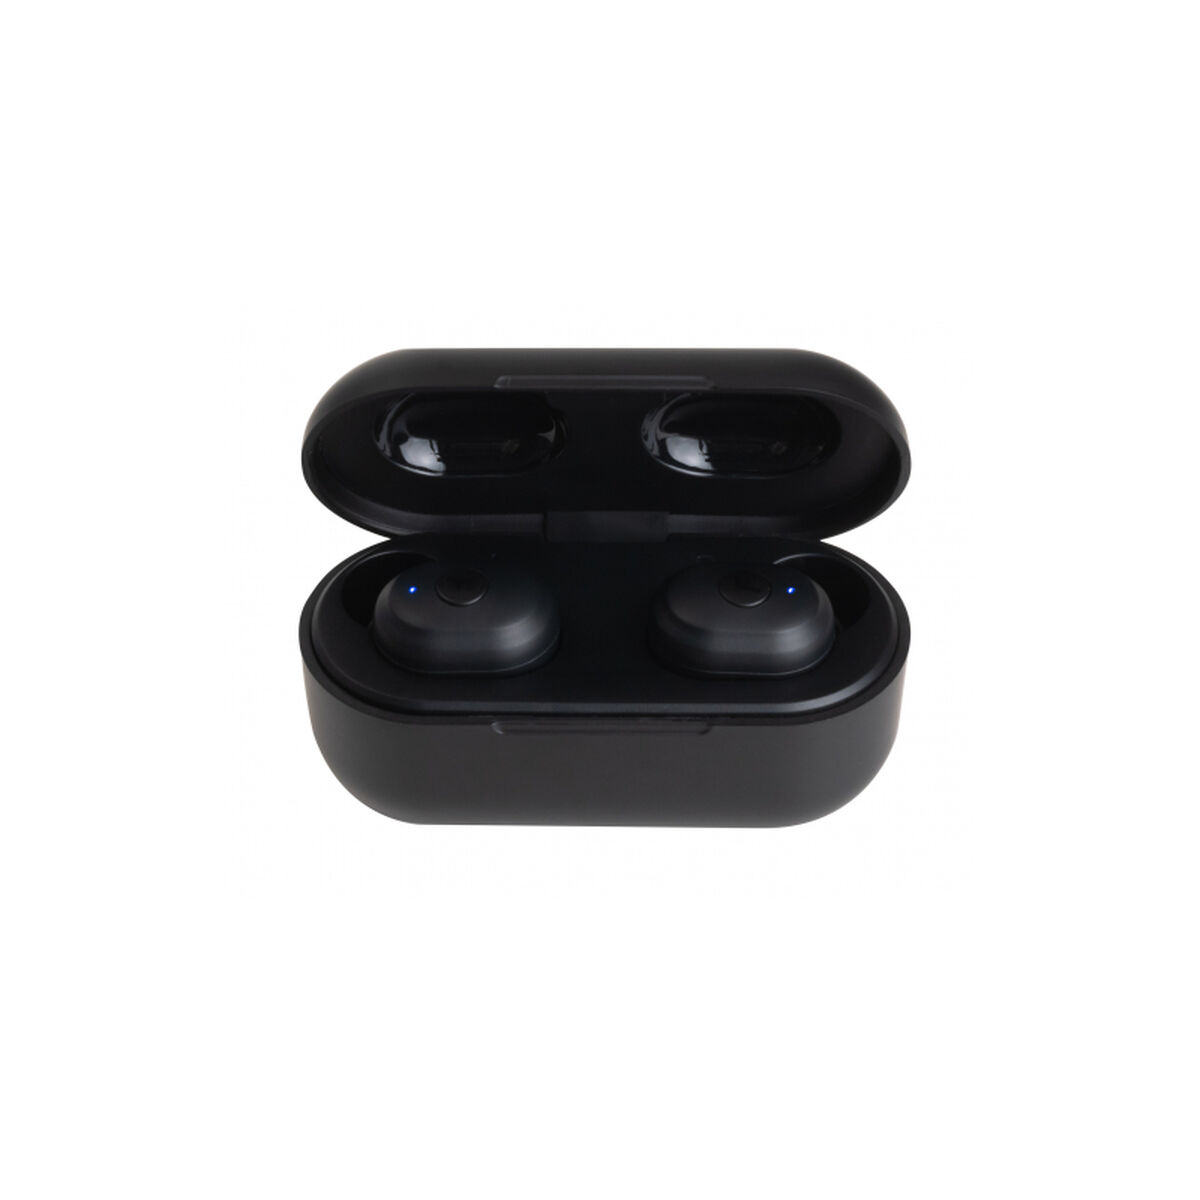 Osta tuote Langattomat kuulokkeet FONESTAR Twins-2N Musta (1 osaa) verkkokaupastamme Korhone: Tietokoneet & Elektroniikka 20% alennuksella koodilla VIIKONLOPPU